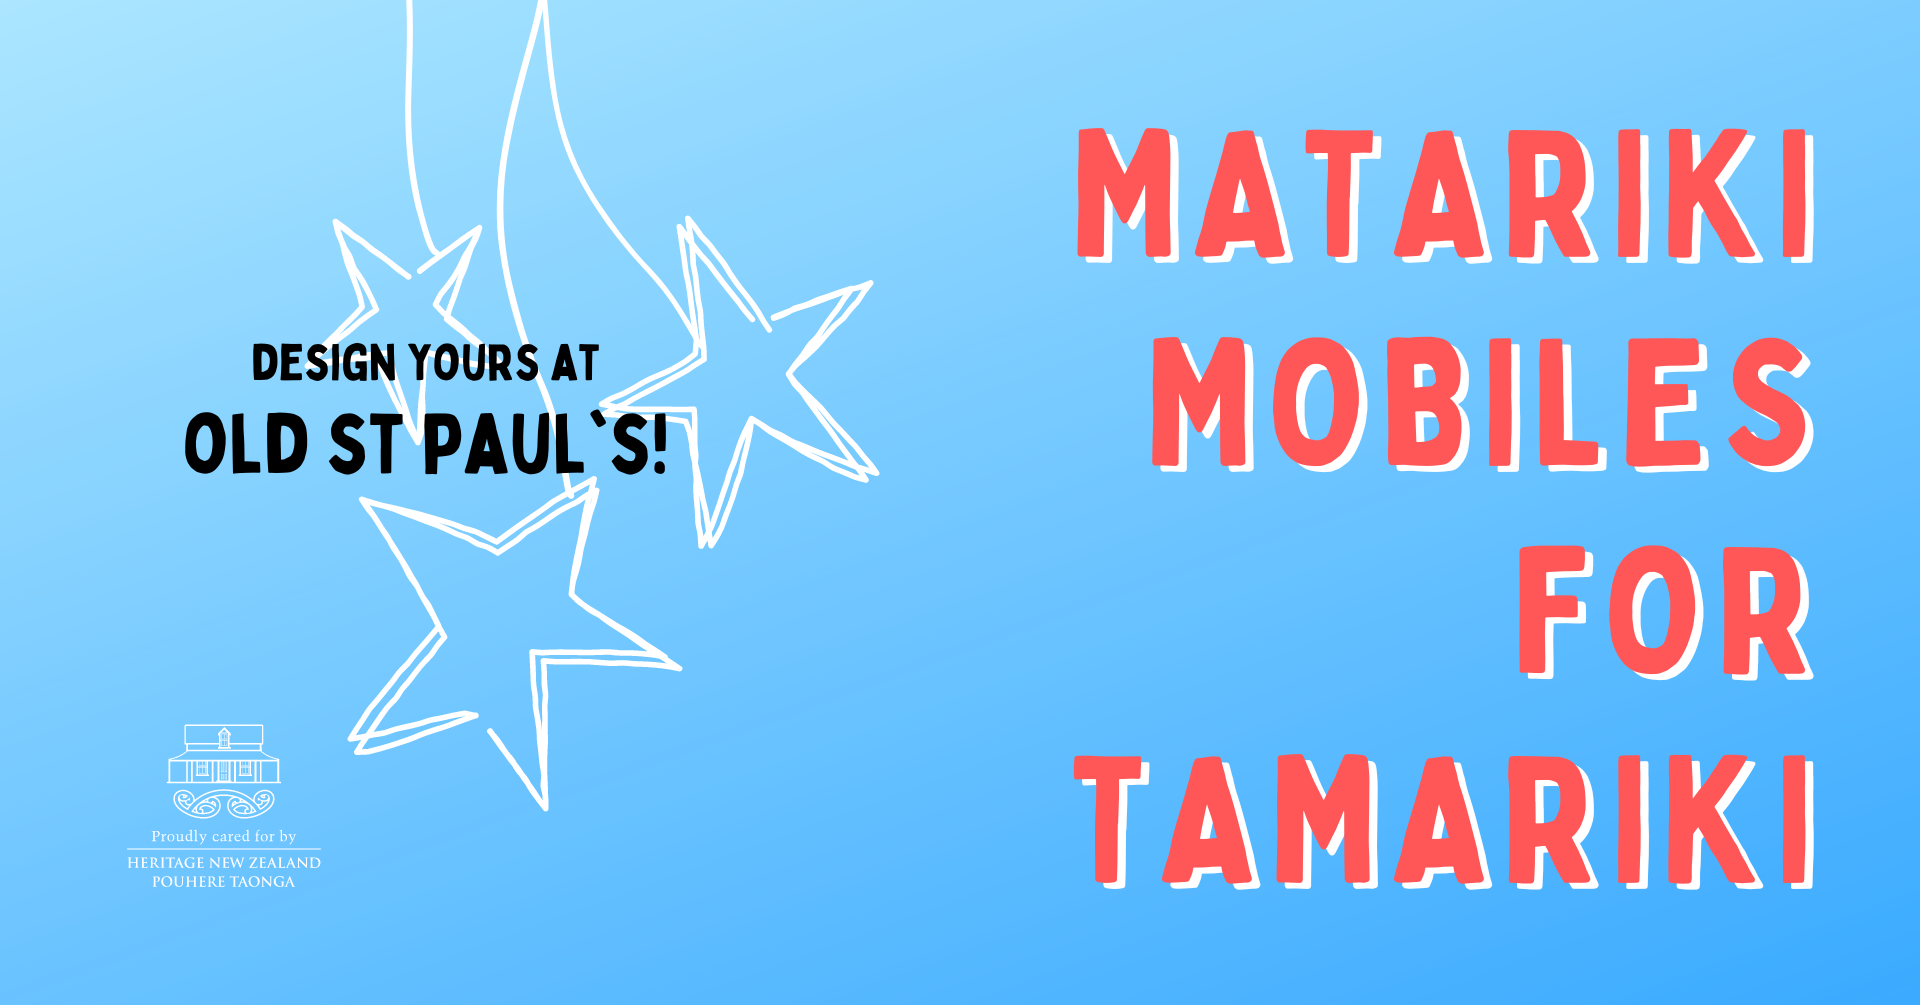 Matariki Mobiles for Tamariki thumbnail image